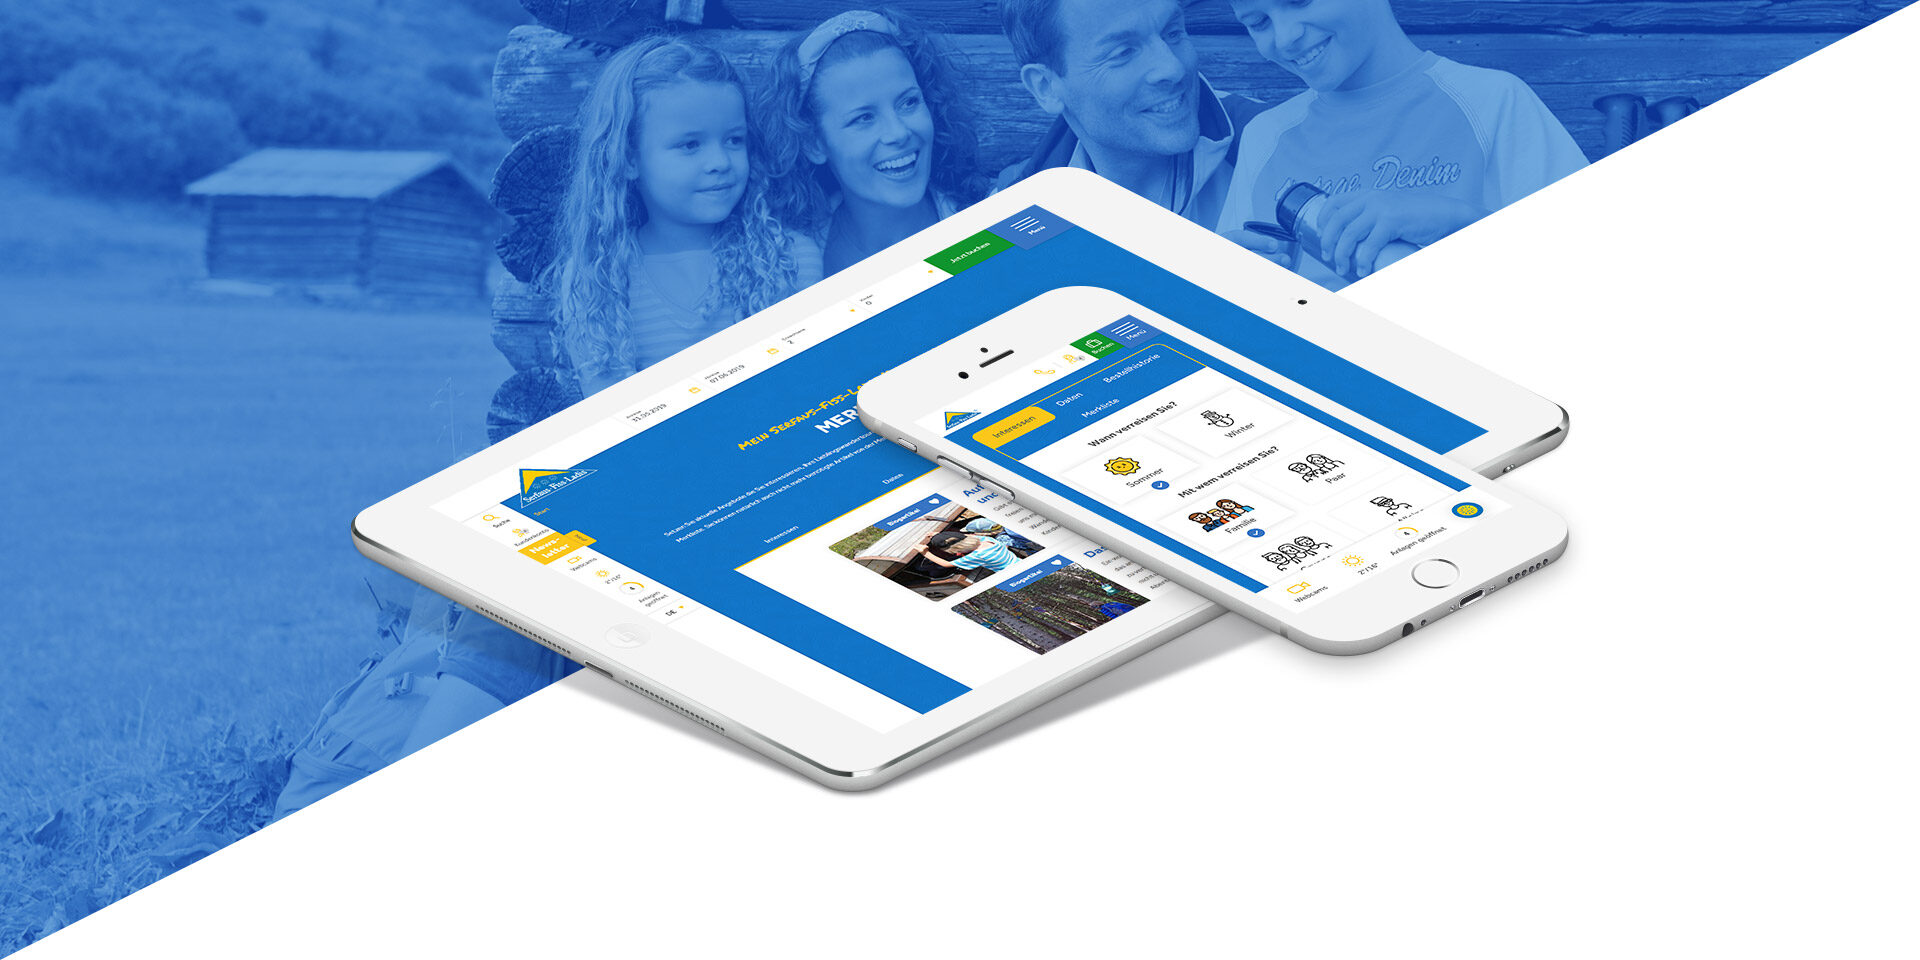 Auf einer weißen Fläche liegen ein Tablet und ein Smartphone, auf denen eine Website-Oberfläche angezeigt wird. Im Hintergrund sind auf einem blau getönten Bild zwei lächelnde Erwachsene und zwei Kinder zu sehen.